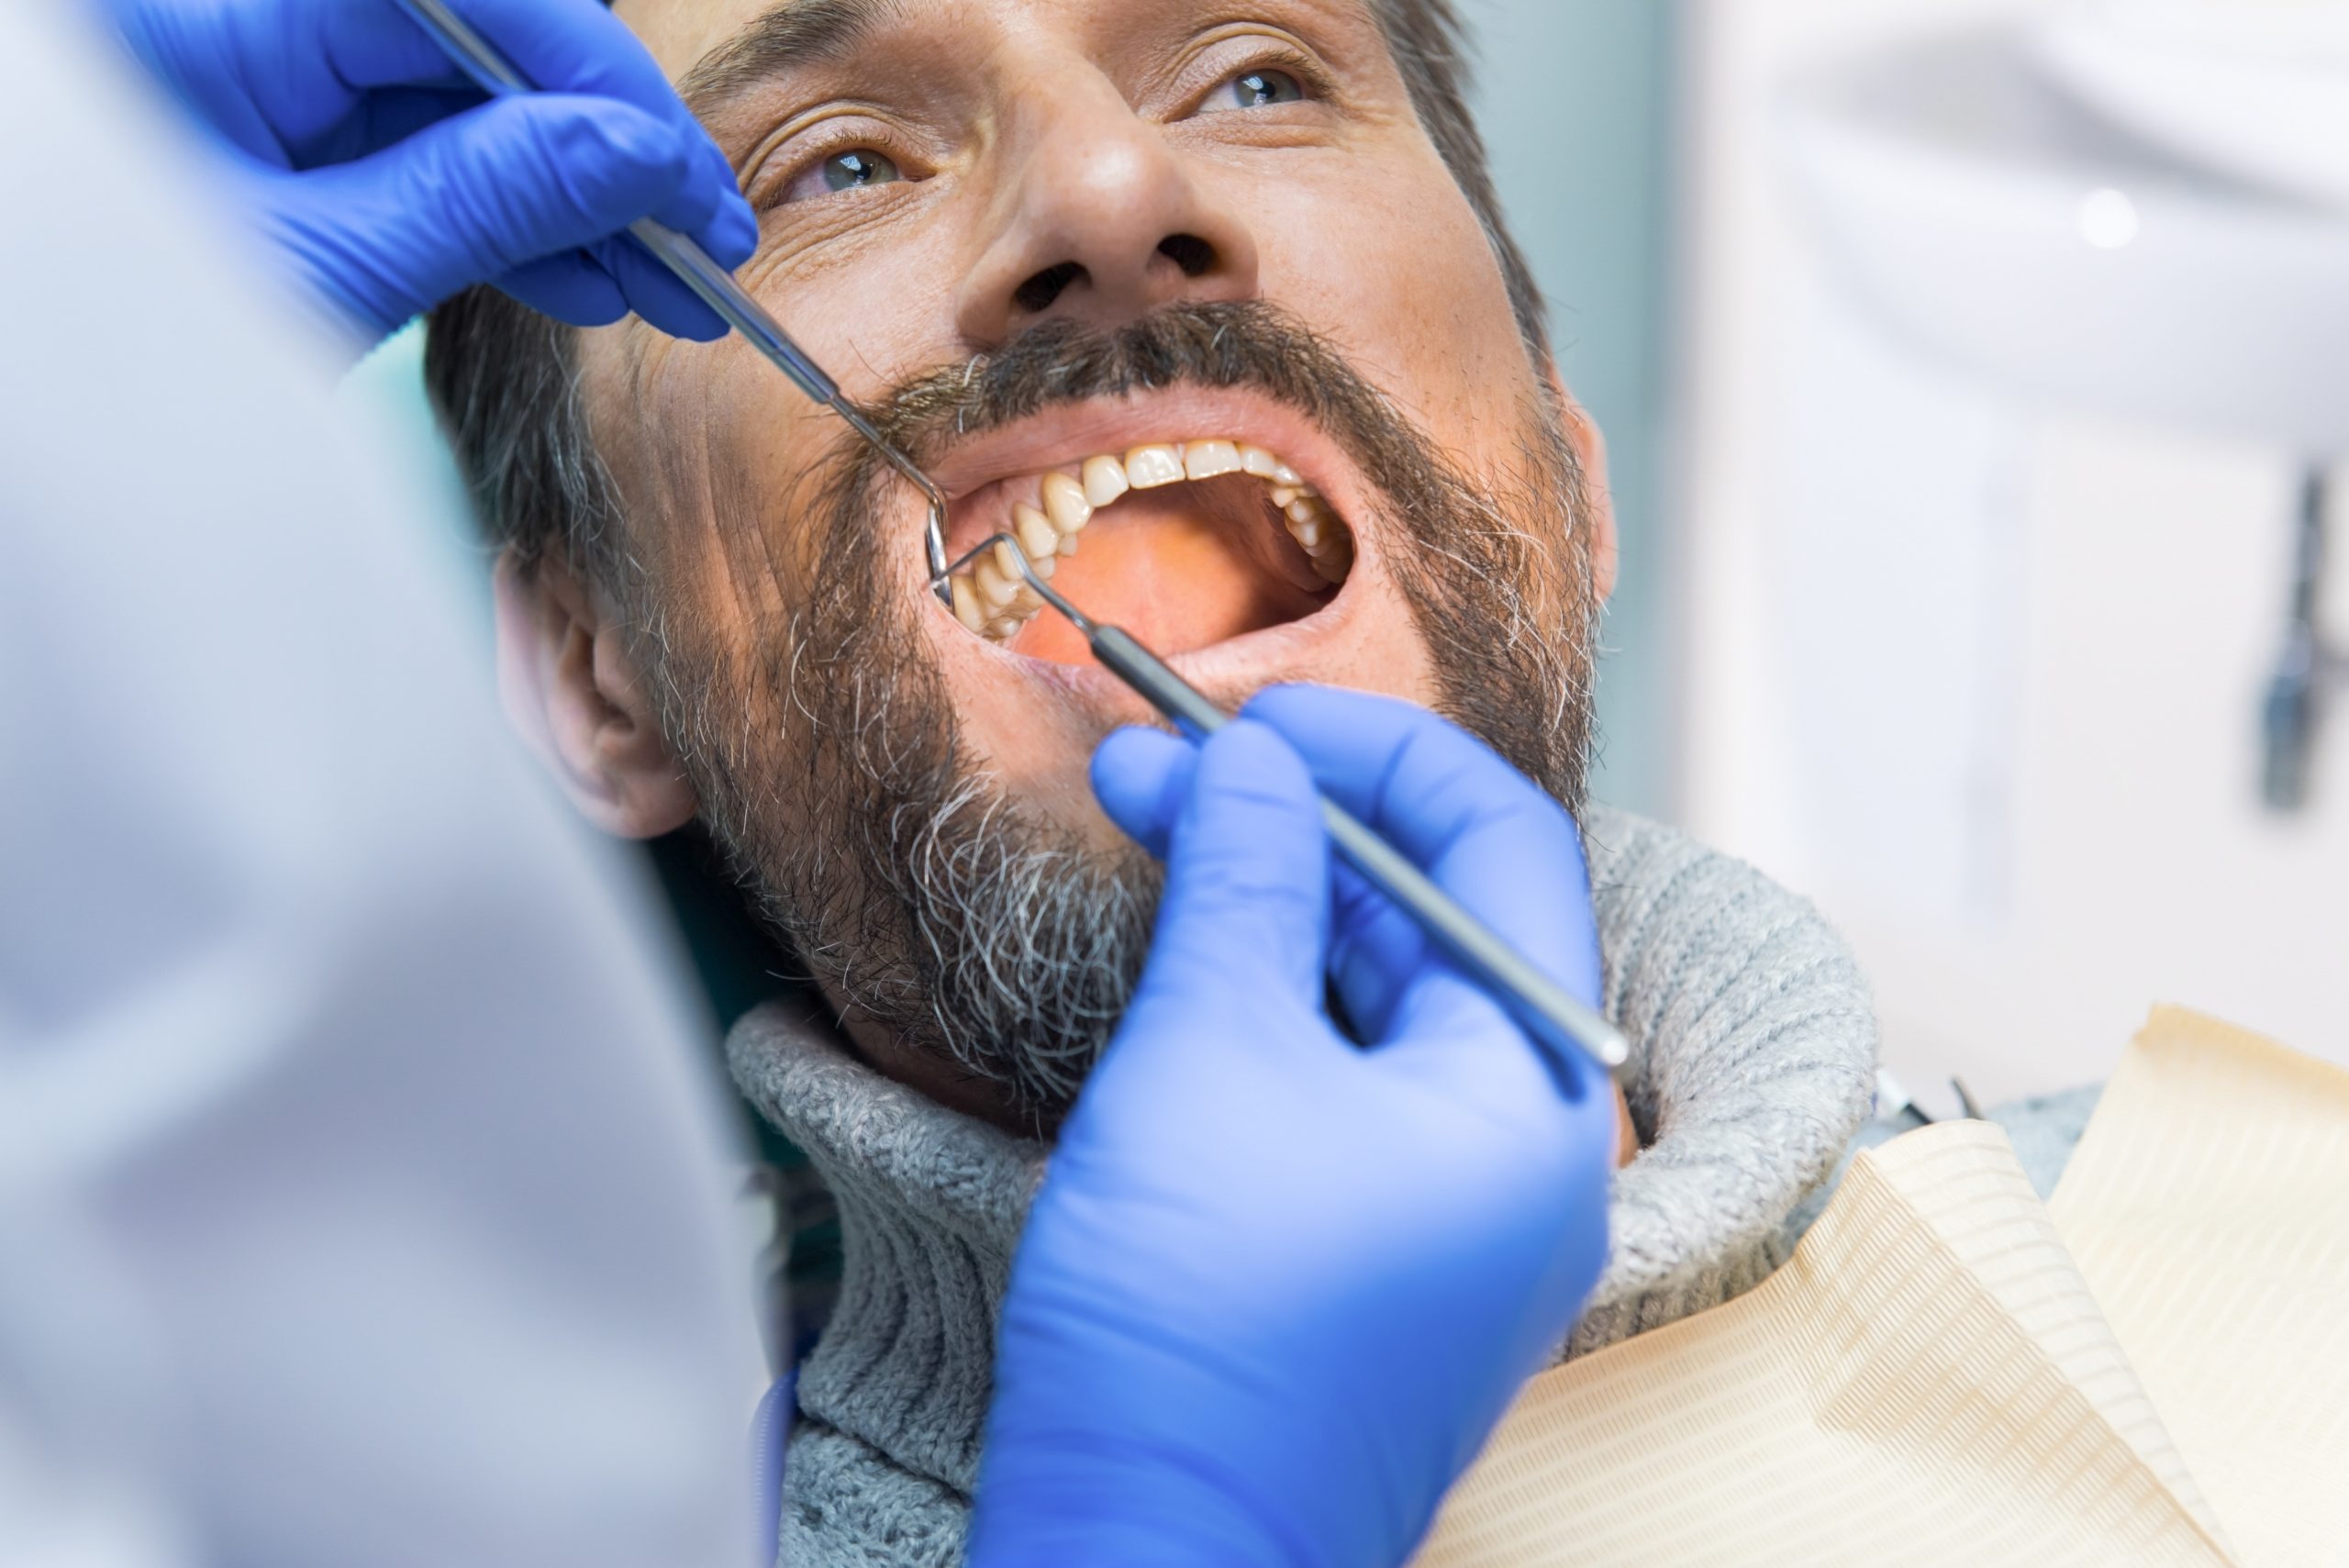 Estas son las enfermedades dentales más comunes en adultos